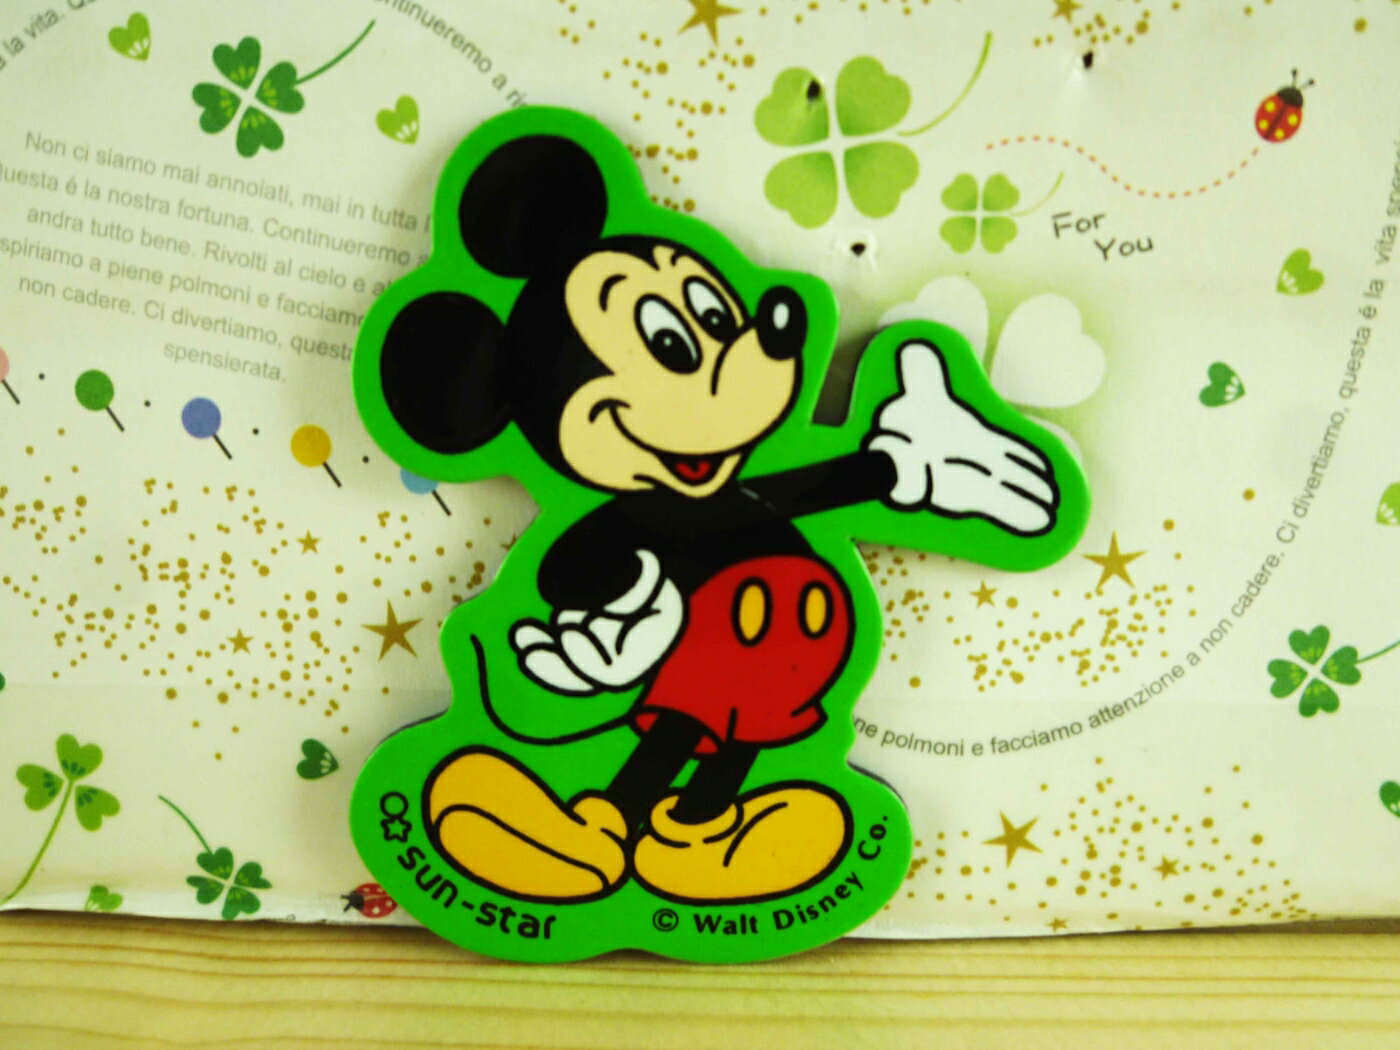 【震撼精品百貨】Micky Mouse 米奇/米妮 磁鐵-綠米奇 震撼日式精品百貨